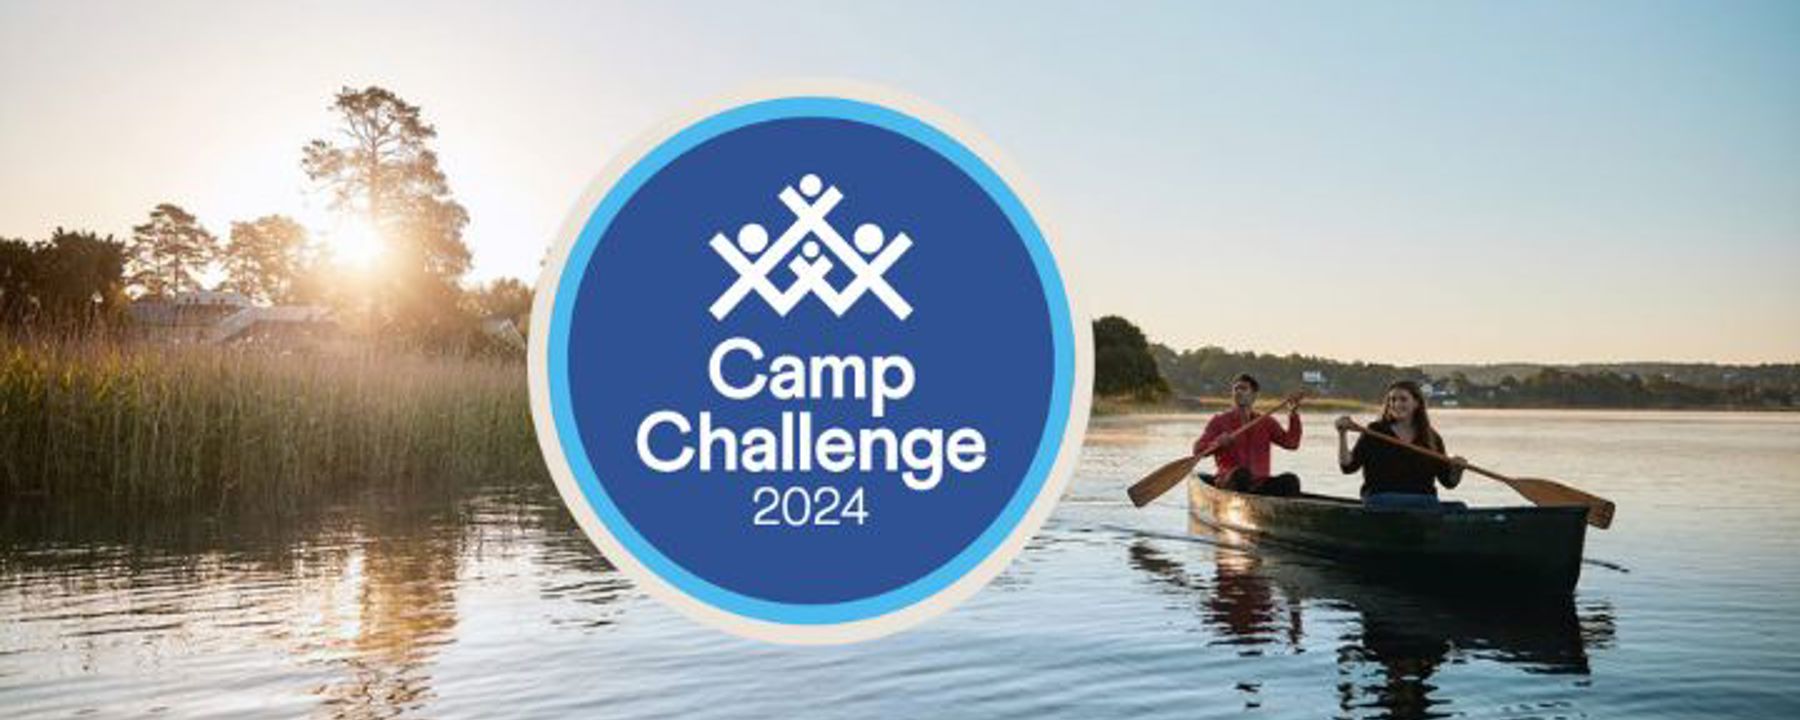 Sjö med solnedgång och par i kanot. Camp Challenge-logga mitt i bild